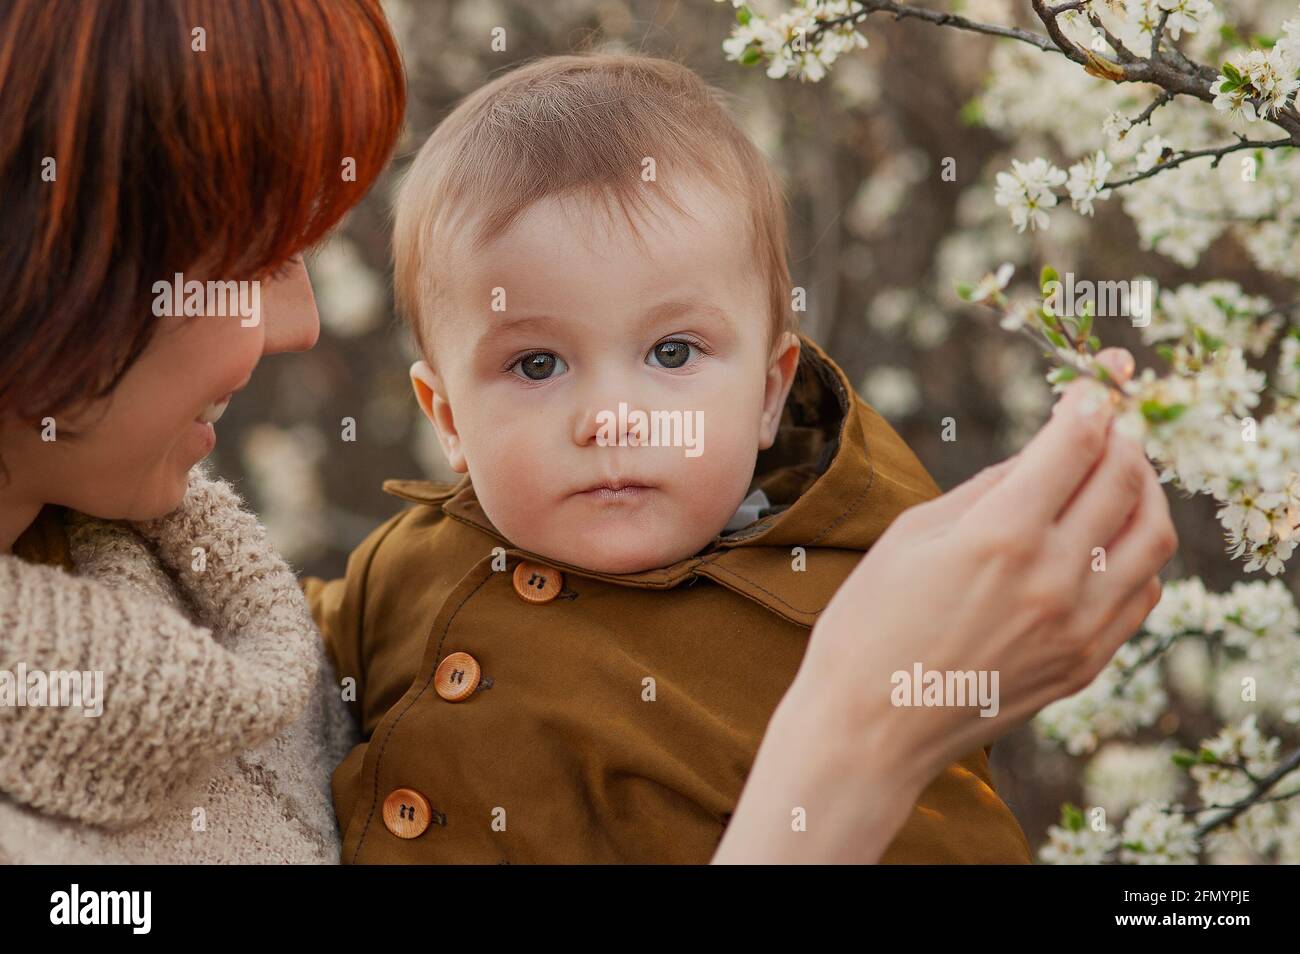 La mamma tiene il bambino sullo sfondo di alberi in fiore Foto Stock